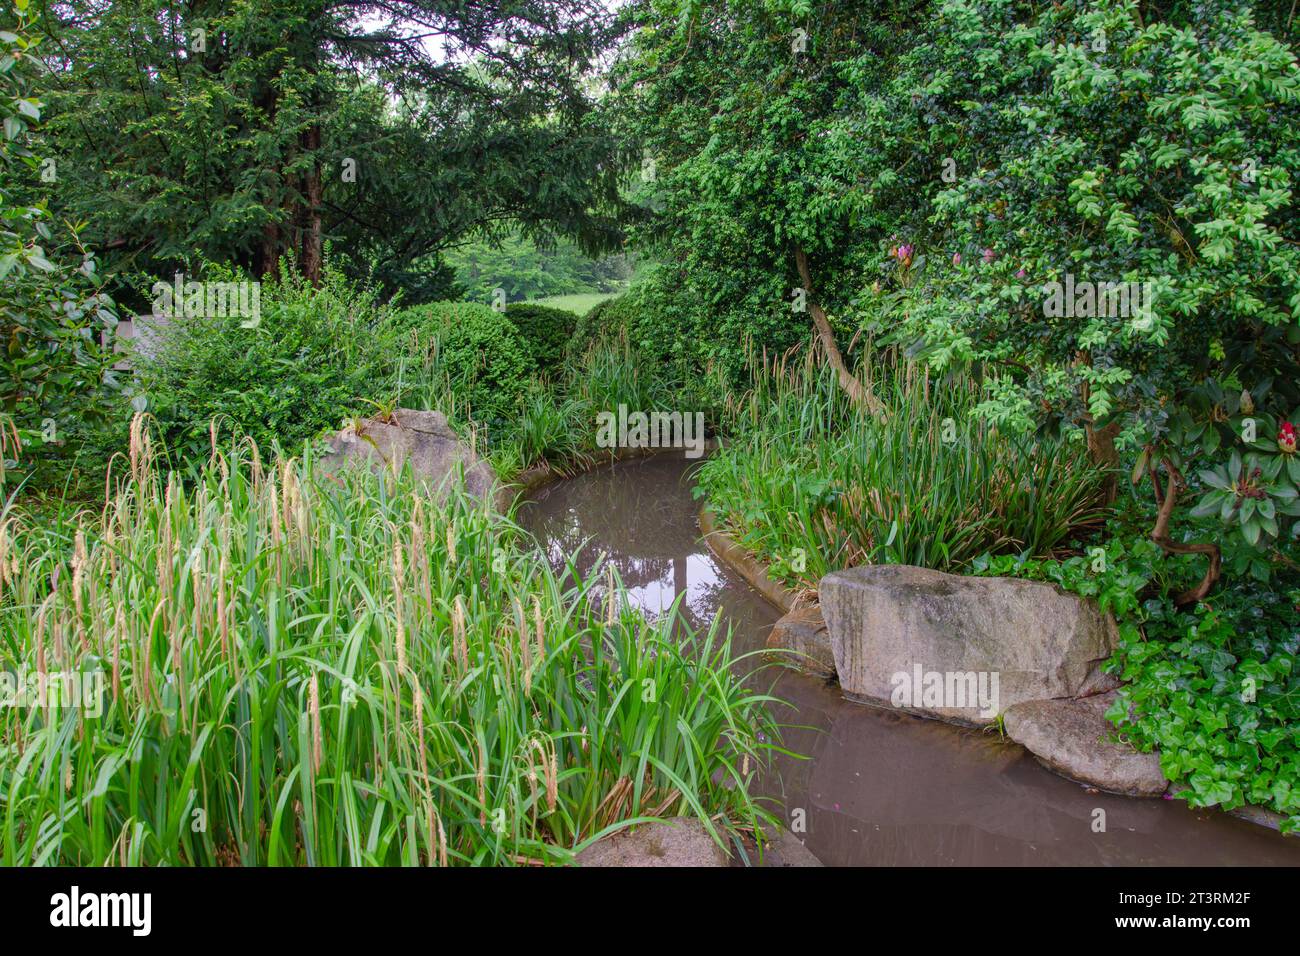 Ein kleiner ruhiger Bach in einem grünen Park. Wasser fließt entlang eines steinernen Bettes. Links: Rhododendronbüsche mit Knospen. Auf der rechten Seite - hohes Gras. Stockfoto